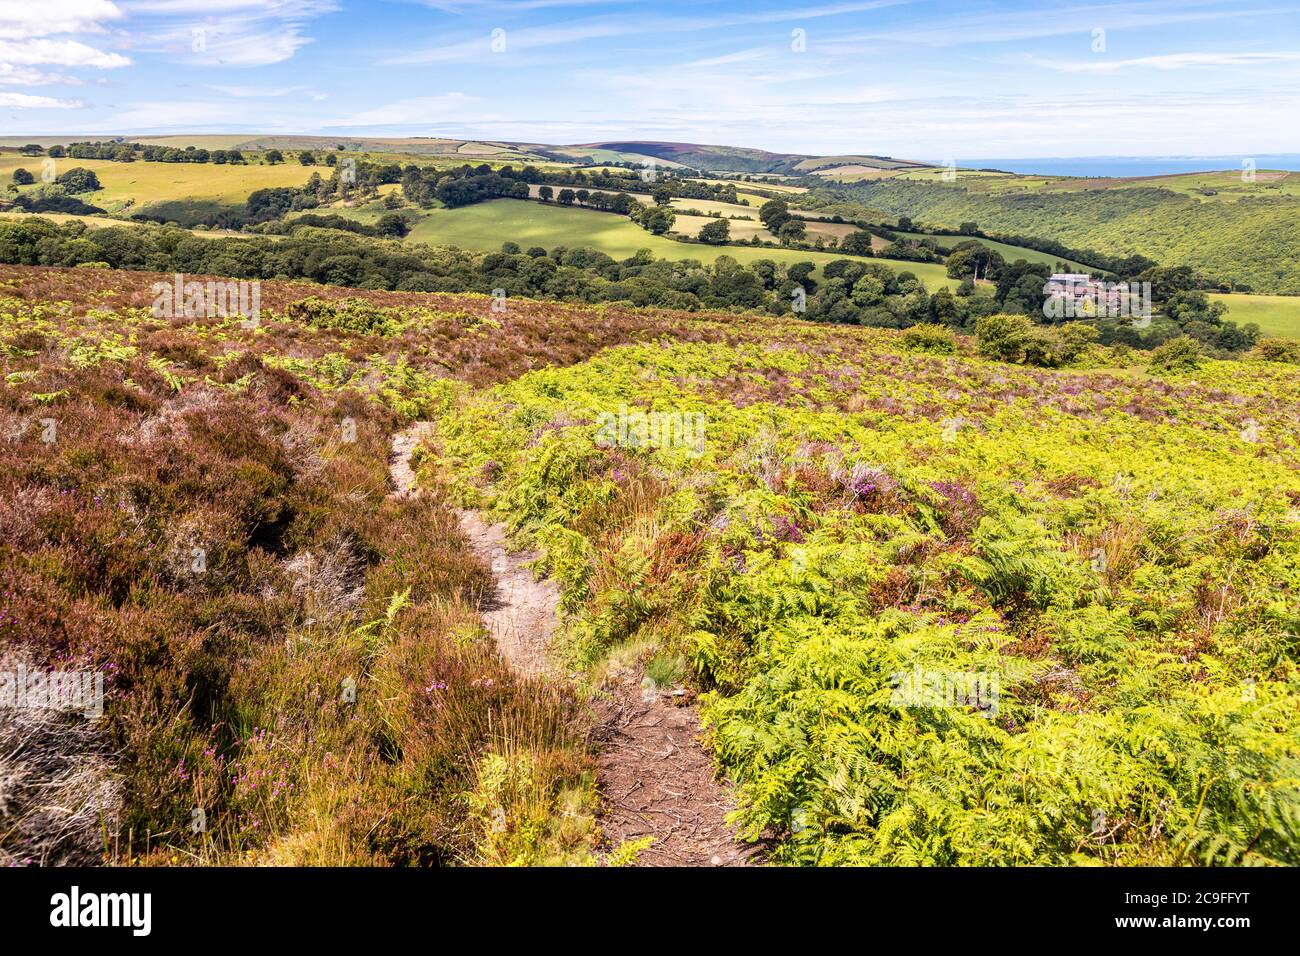 Parc national d'Exmoor - la vue vers Cluntsham depuis le chemin sur Dunkery Hill menant à Dunkery Beacon, Somerset Royaume-Uni Banque D'Images